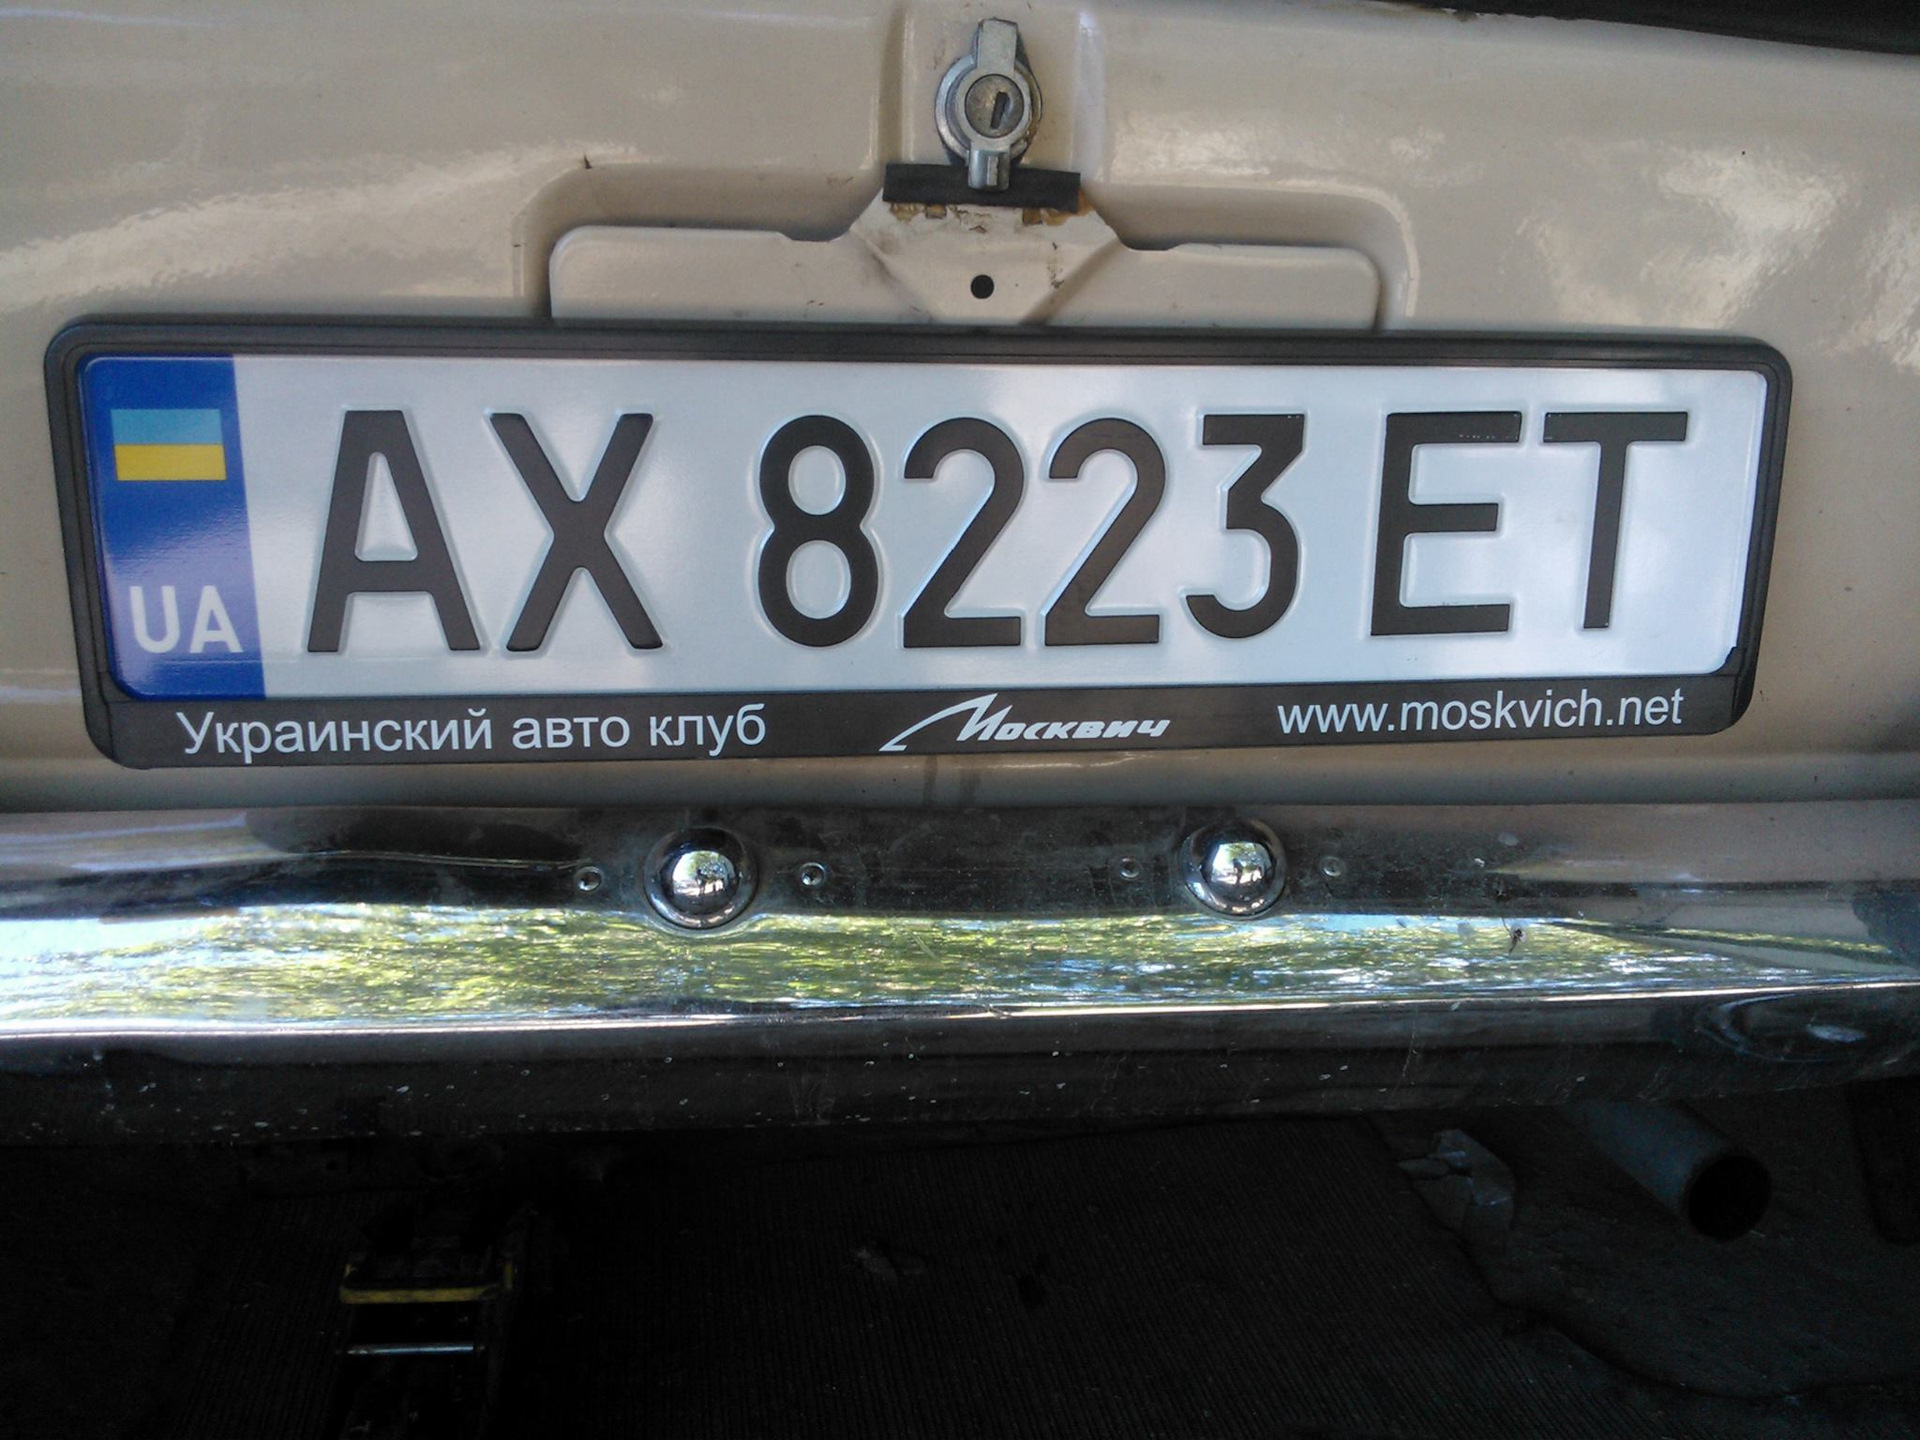 Вт номера украина. Номера Украины автомобильные. Украинские автомобильные номера. Укр номера авто. Старые украинские номера автомобилей.